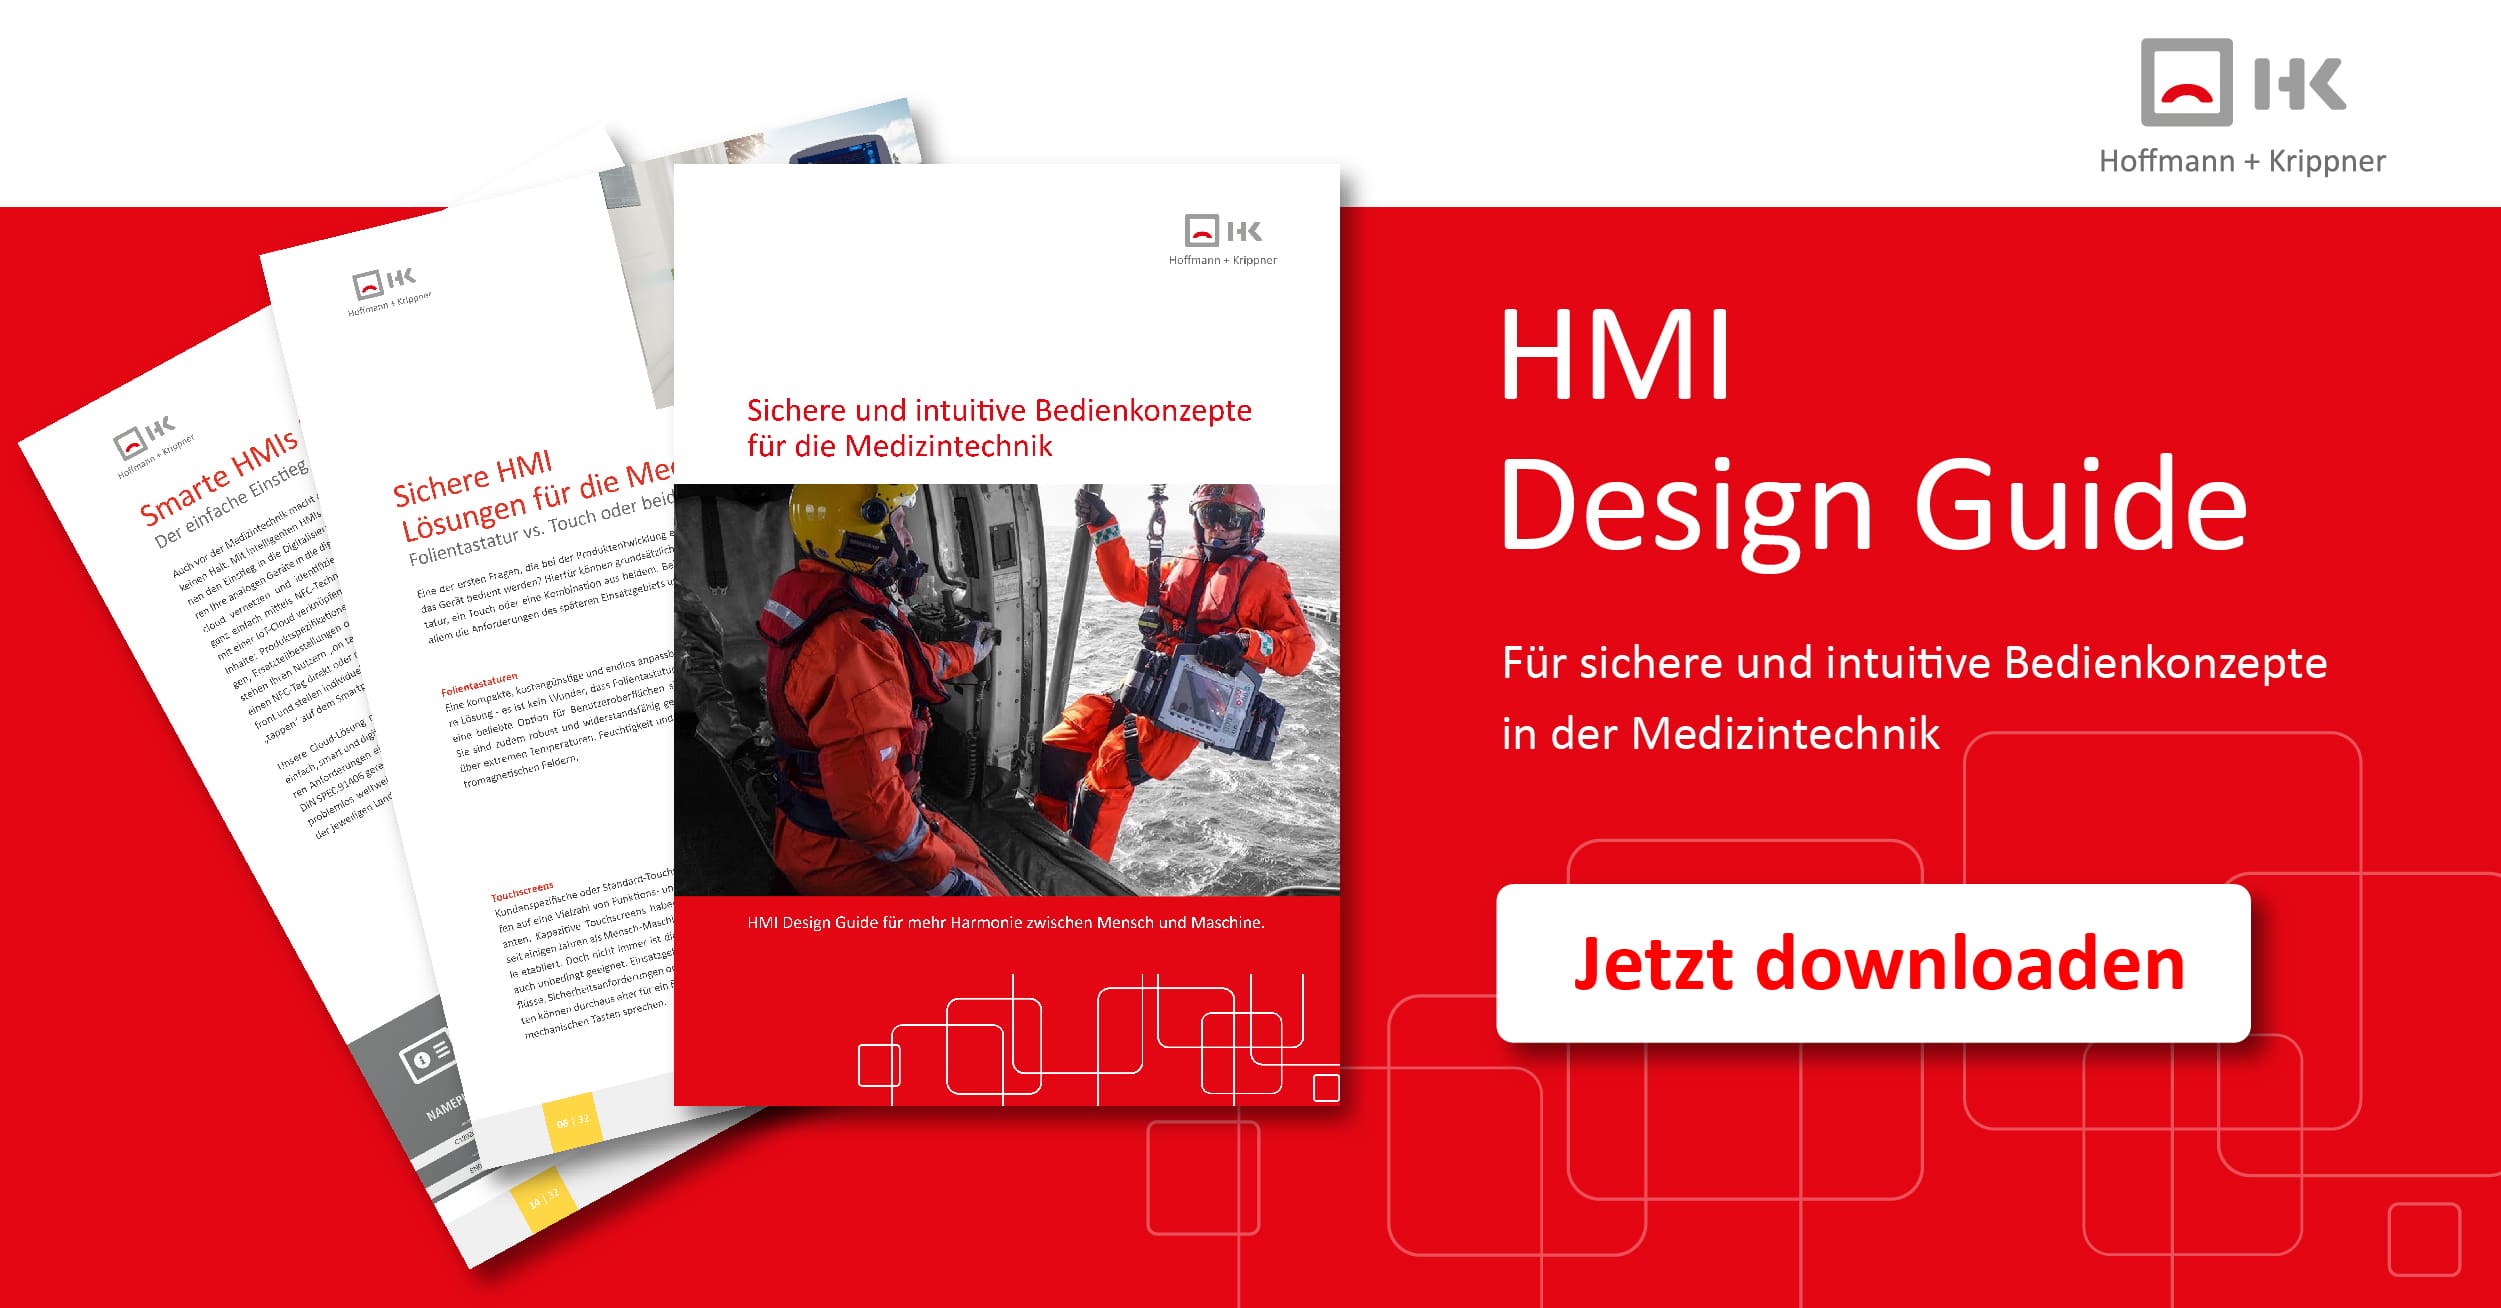 Hoffmann + Krippner - HMI Design Guide for Medical Technology